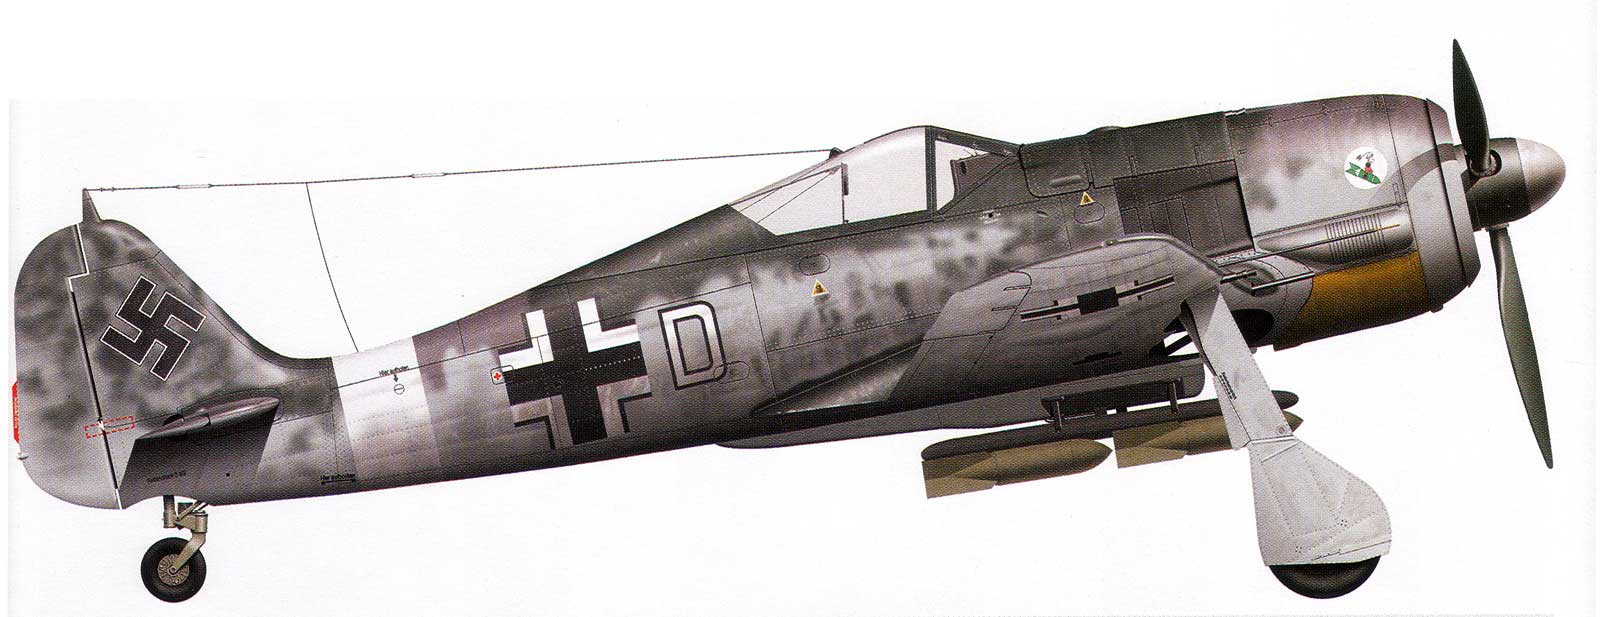 Asisbiz Focke Wulf Fw 190A5 5.SchG2 White D WNr 5973 abandoned